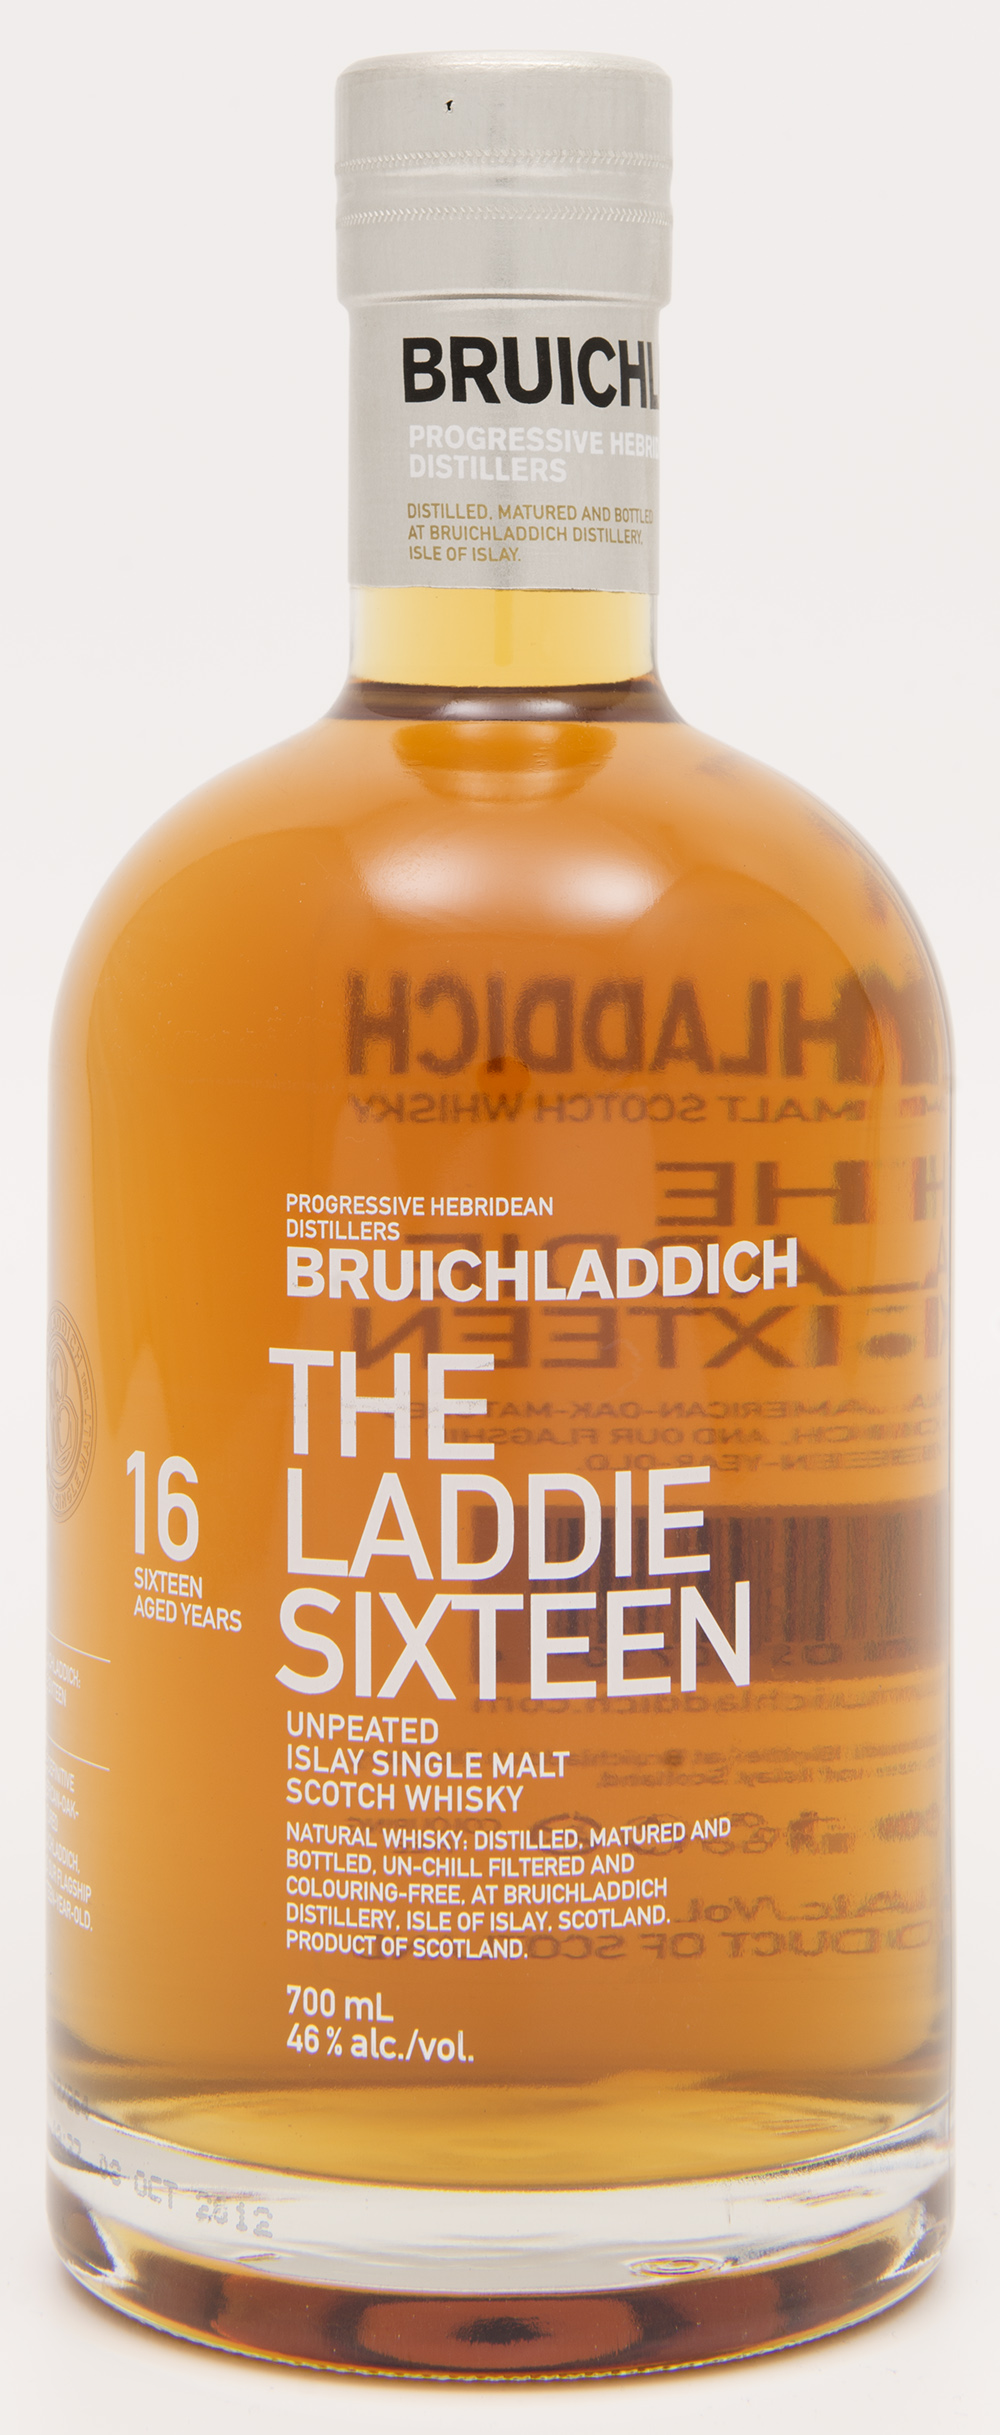 Billede: DSC_3603 The Laddie Sixteen - bottle.jpg